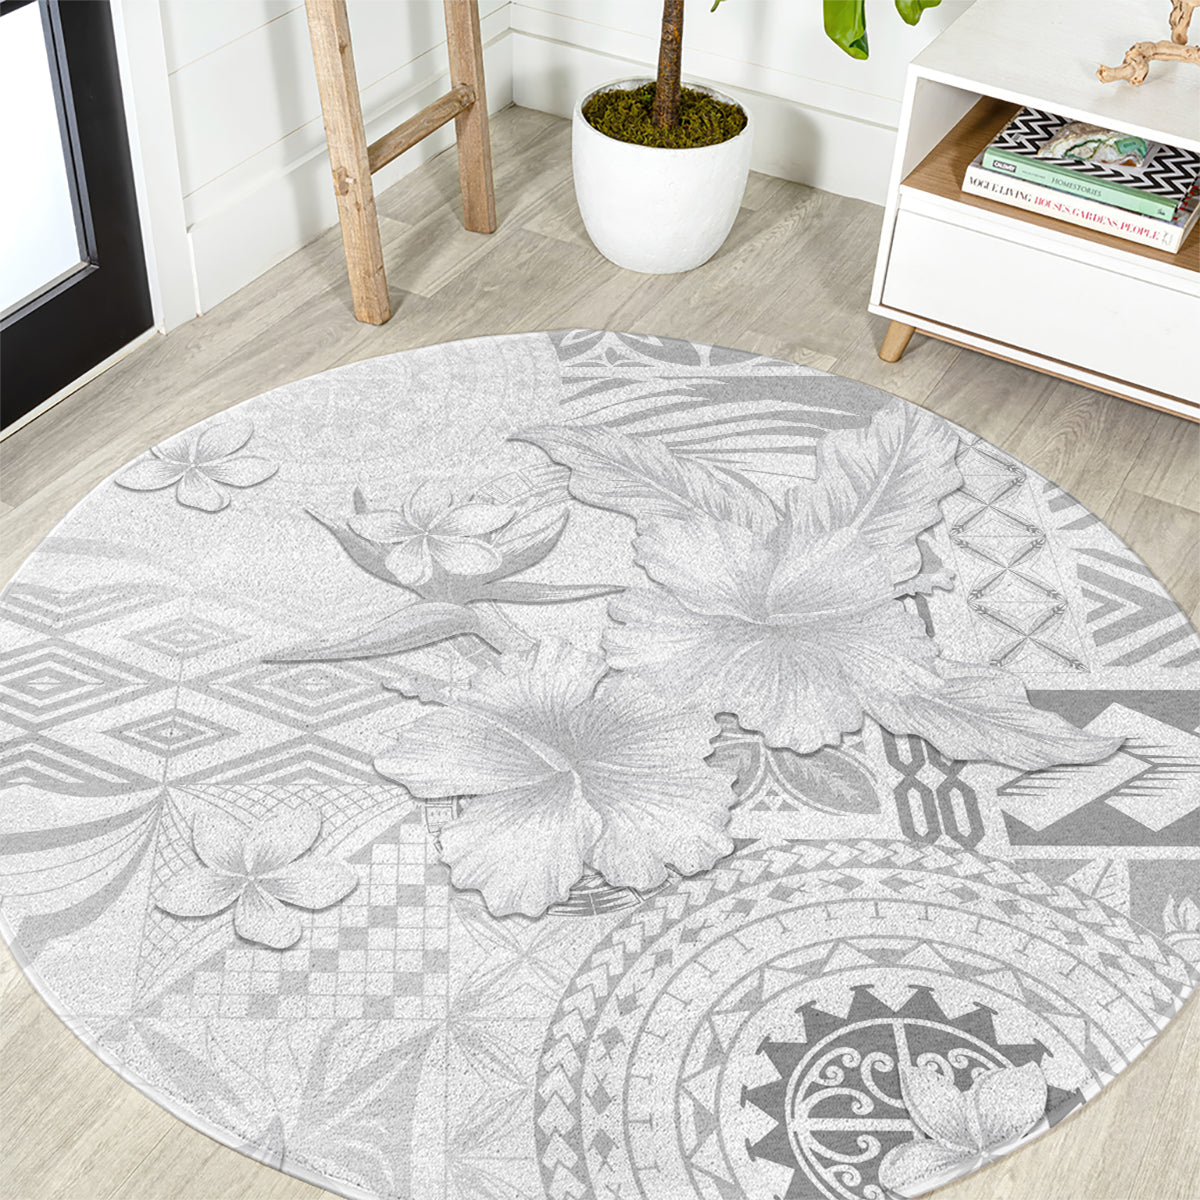 Samoa Siapo Pattern With White Hibiscus Round Carpet